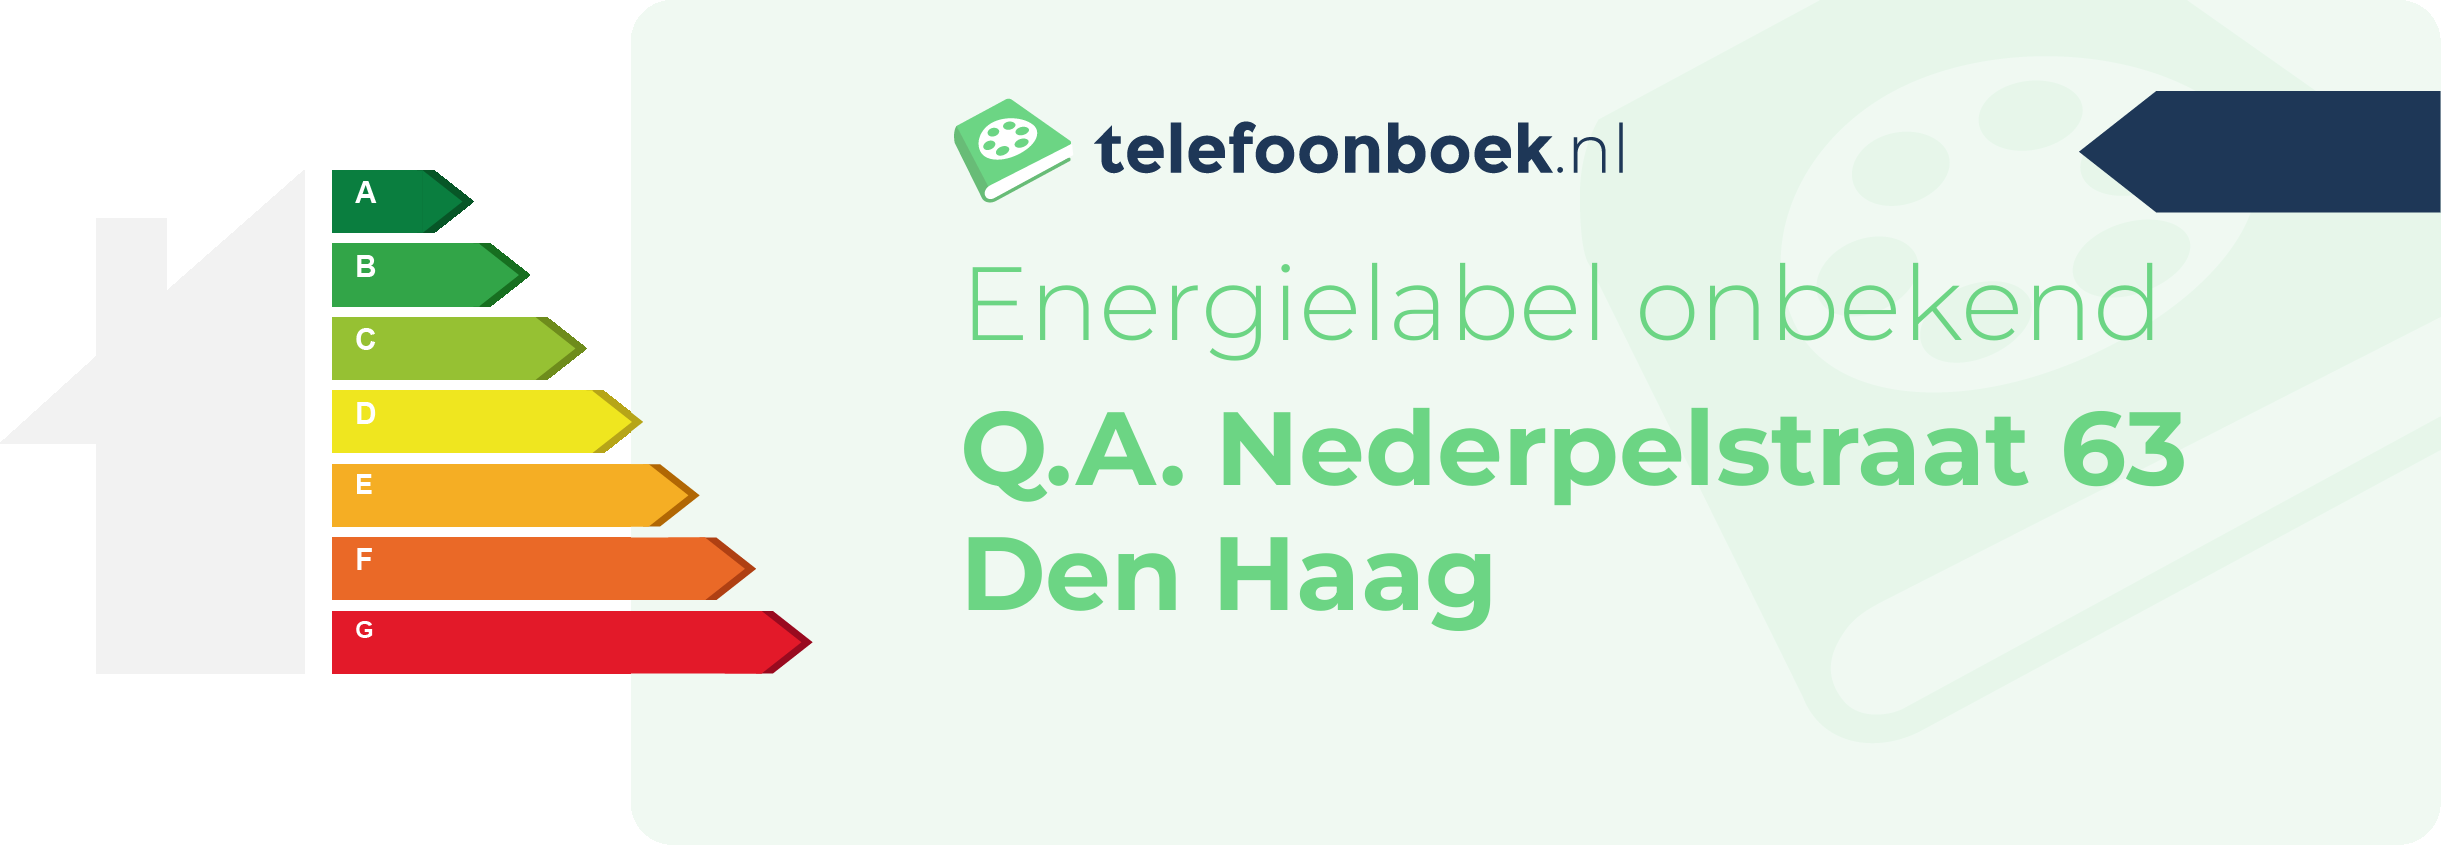 Energielabel Q.A. Nederpelstraat 63 Den Haag